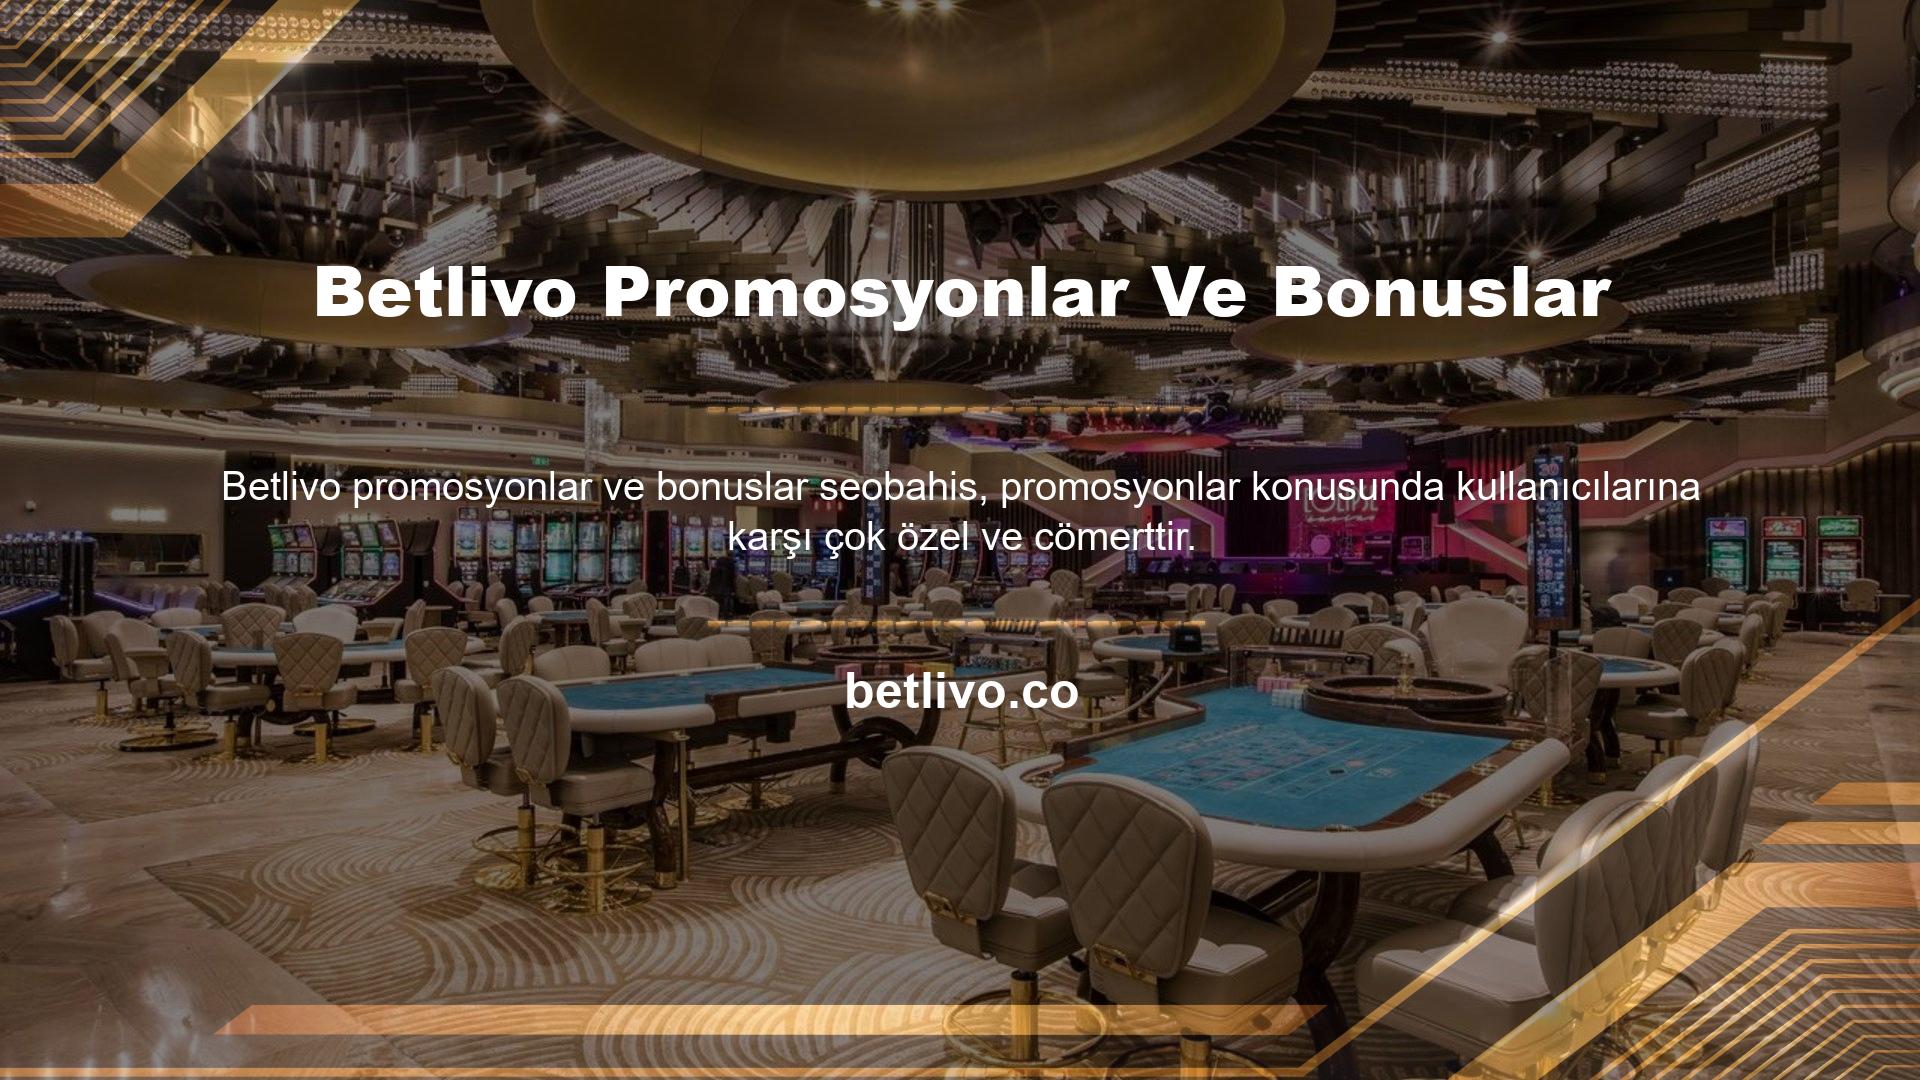 Başka hiçbir web sitesi Betlivo promosyonları ve bonusları sunmuyor ve bu kadar çok bonus dağıtma konusunda bu kadar cömert değil